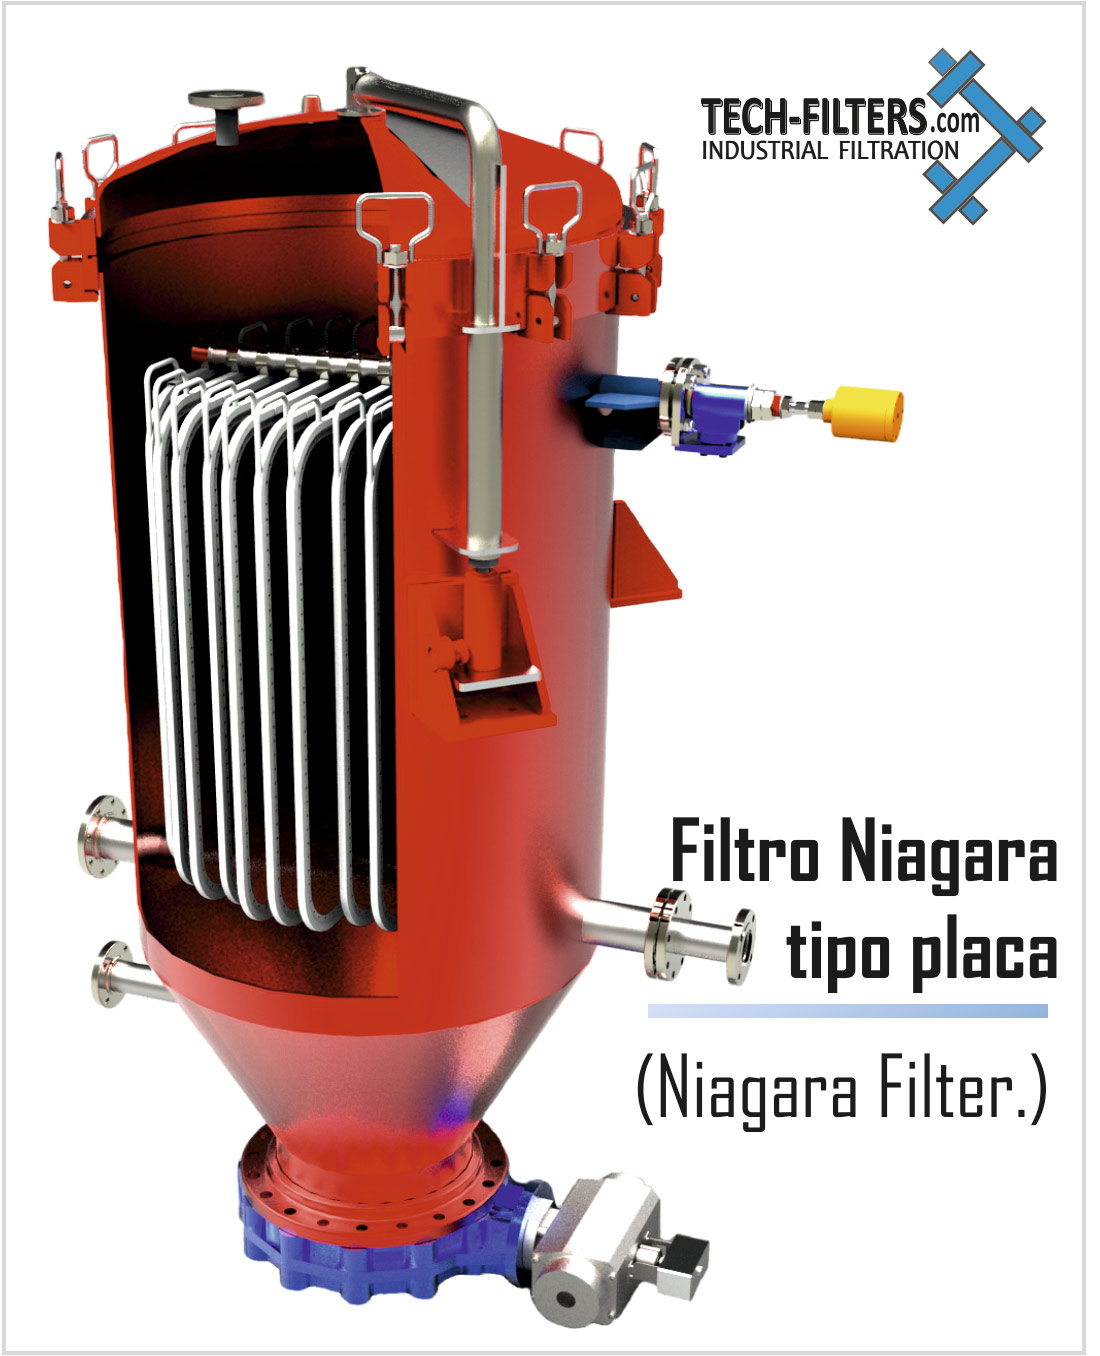 Filtros industriales tipo placa Niagara. Tech-Filters